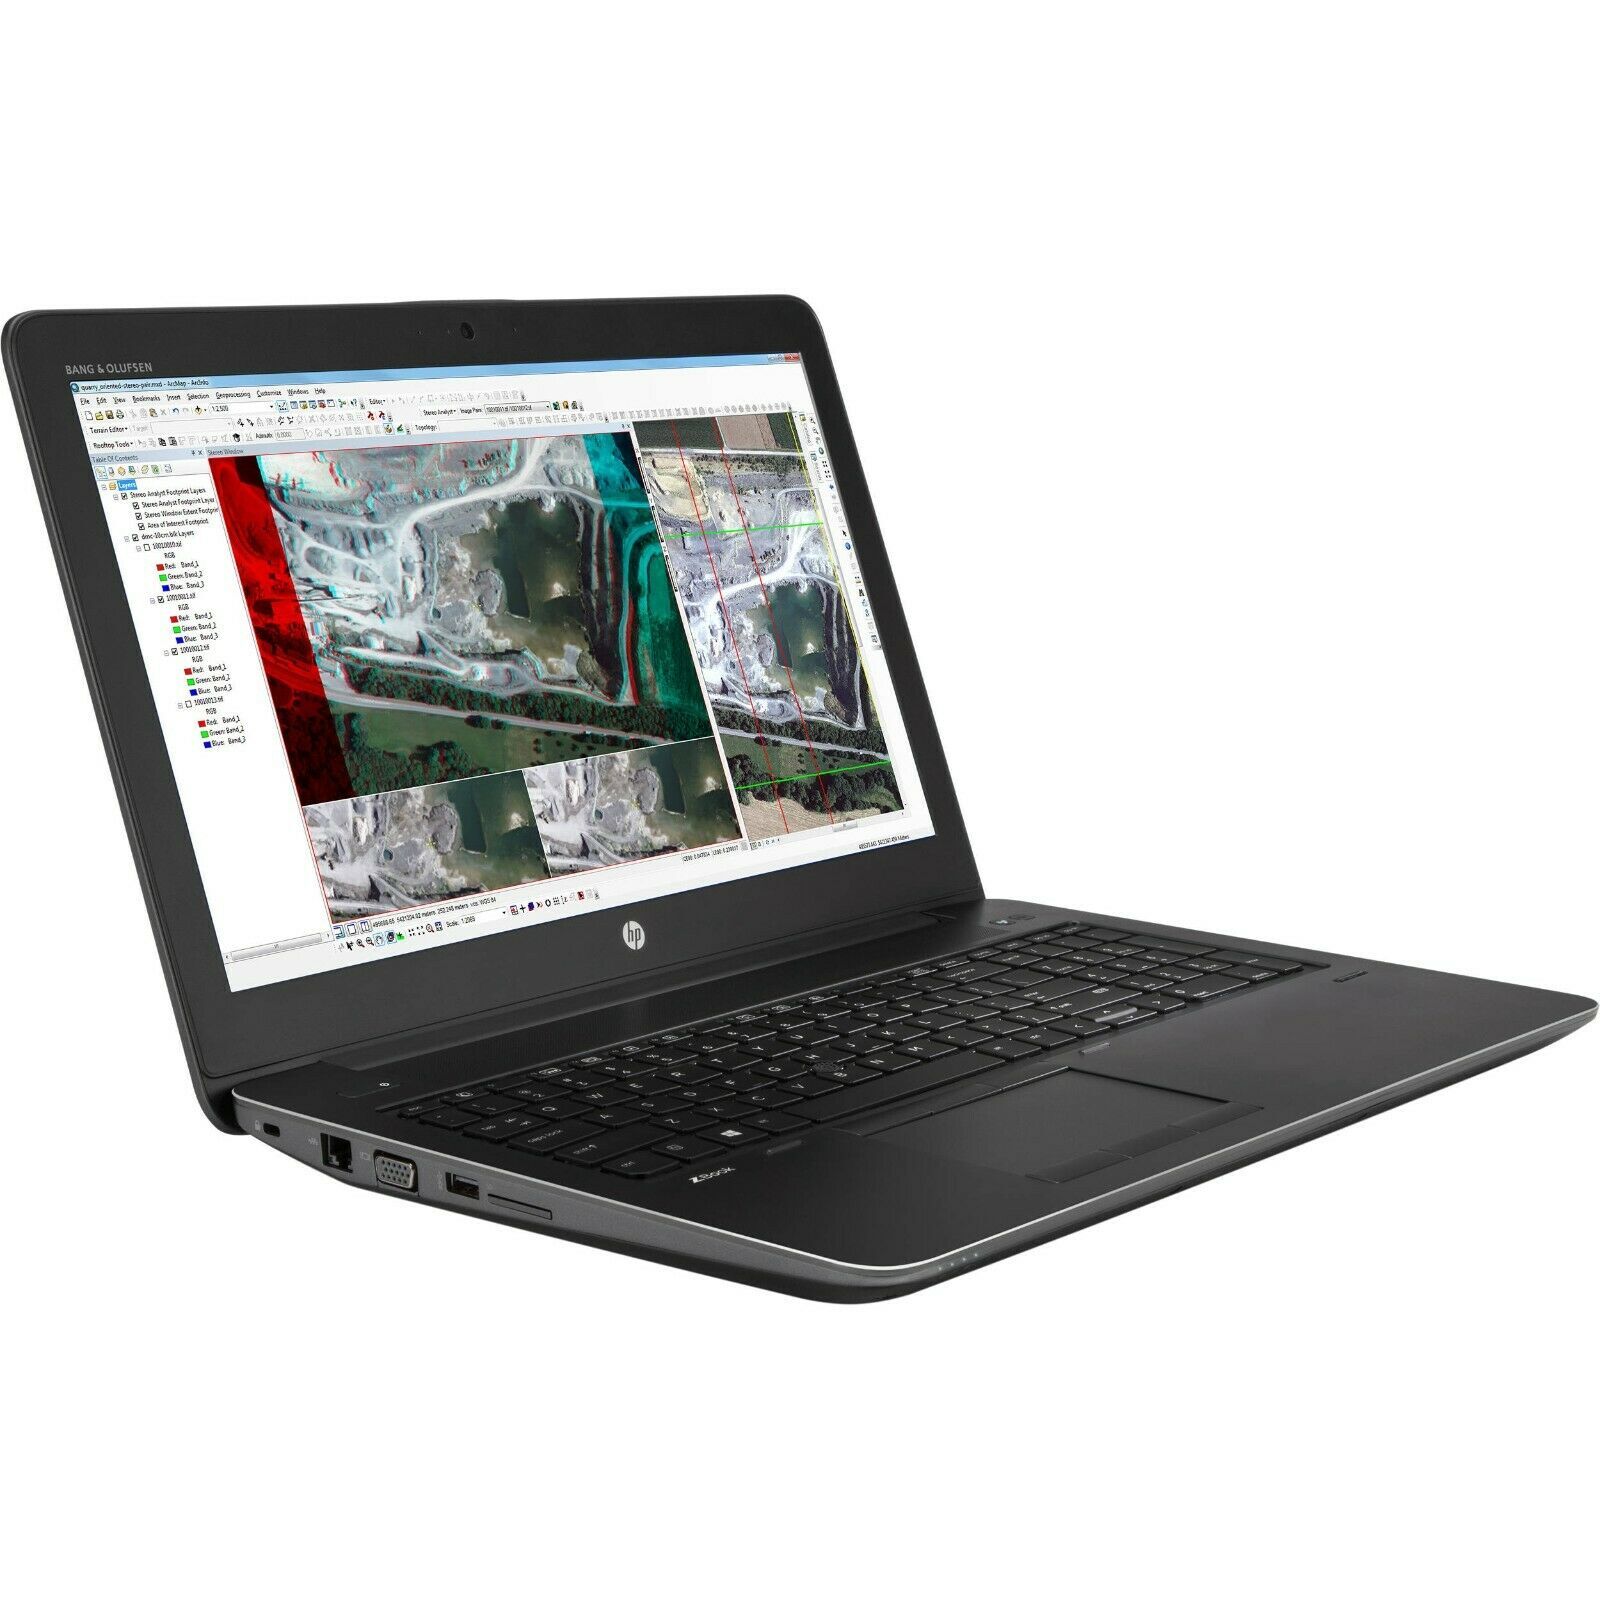 HP ZBook 15 G3 Intel i7 6820HQ 2.70GHz 16GB RAM 512GB SSD 15.6" FHD Win 10